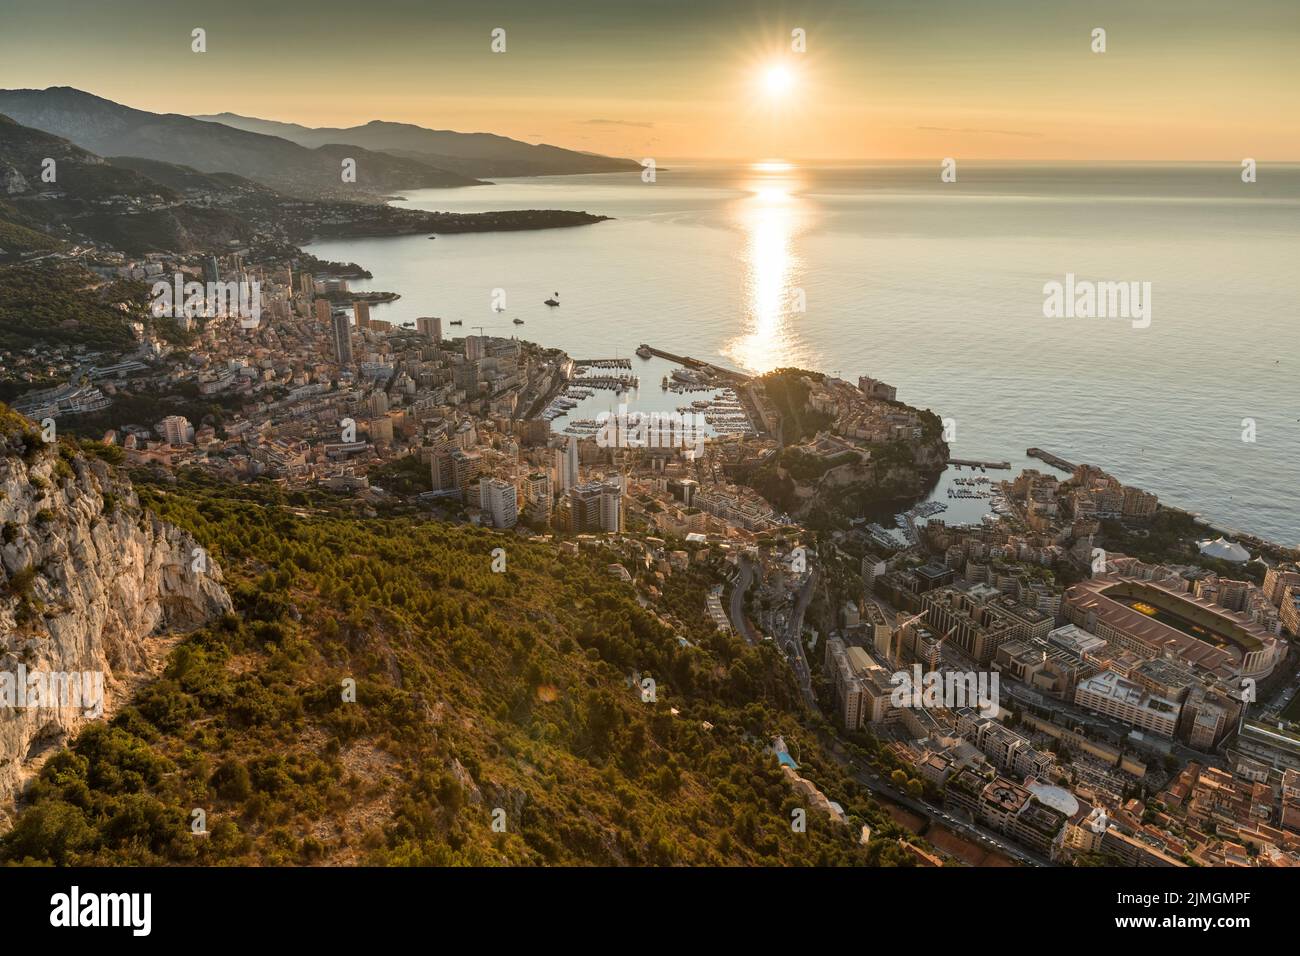 Vue aérienne de la Principauté de Monaco au lever du soleil, Monte-Carlo, vieille ville, point de vue à la Turbie le matin, port Hercule, P Banque D'Images